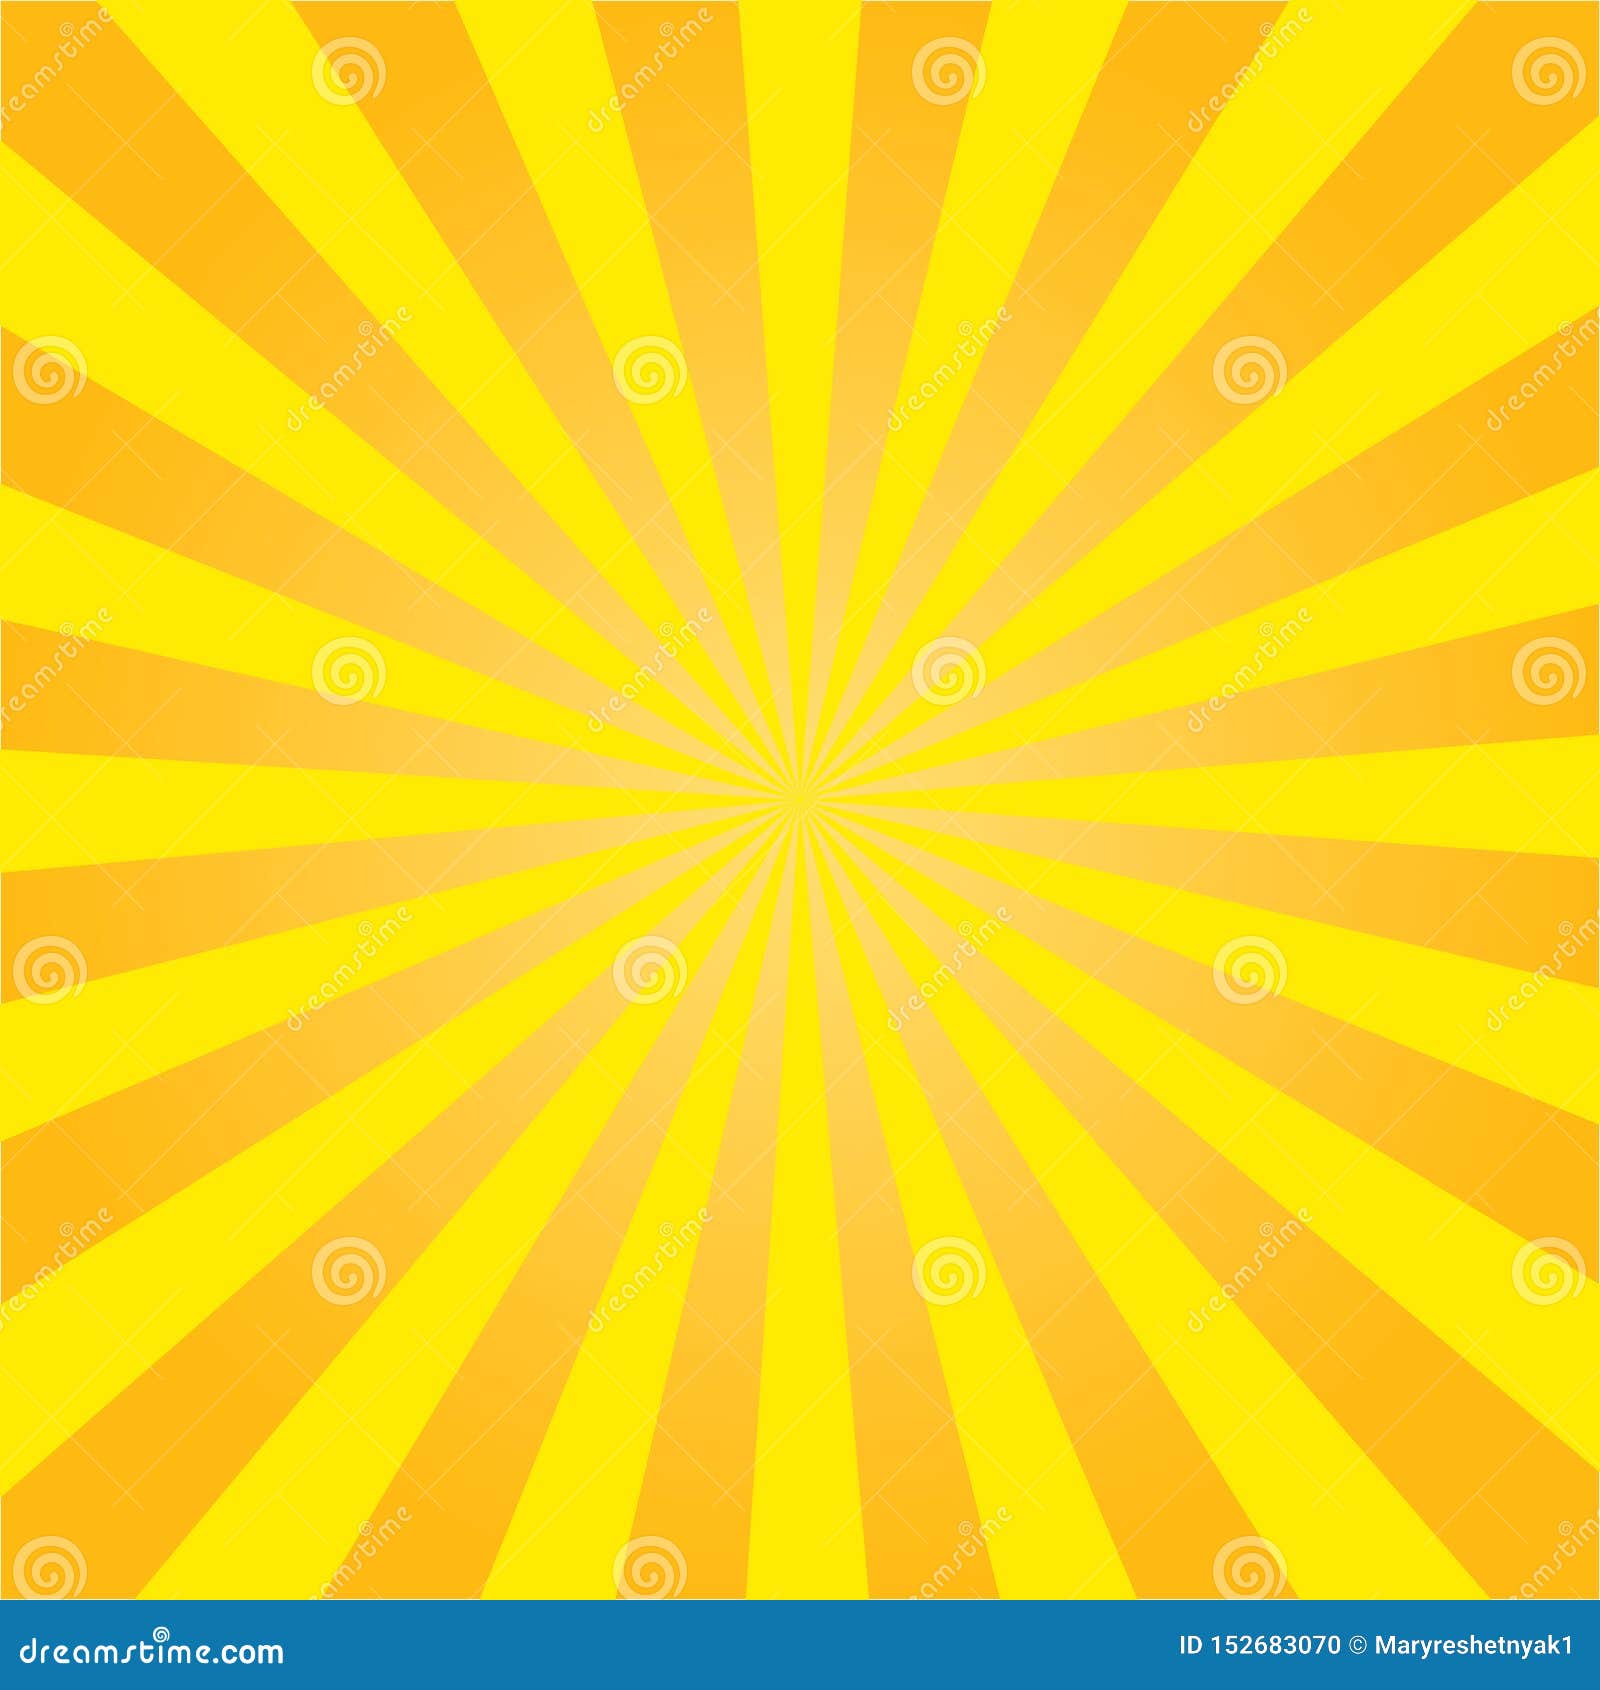 Tận hưởng sự ấm áp của tia nắng vàng rực rỡ trên nền Radial Retro này. Được thiết kế bởi vector Eps10, hình nền này đem lại sự trẻ trung và tươi mới cho bất kỳ thiết kế nào.